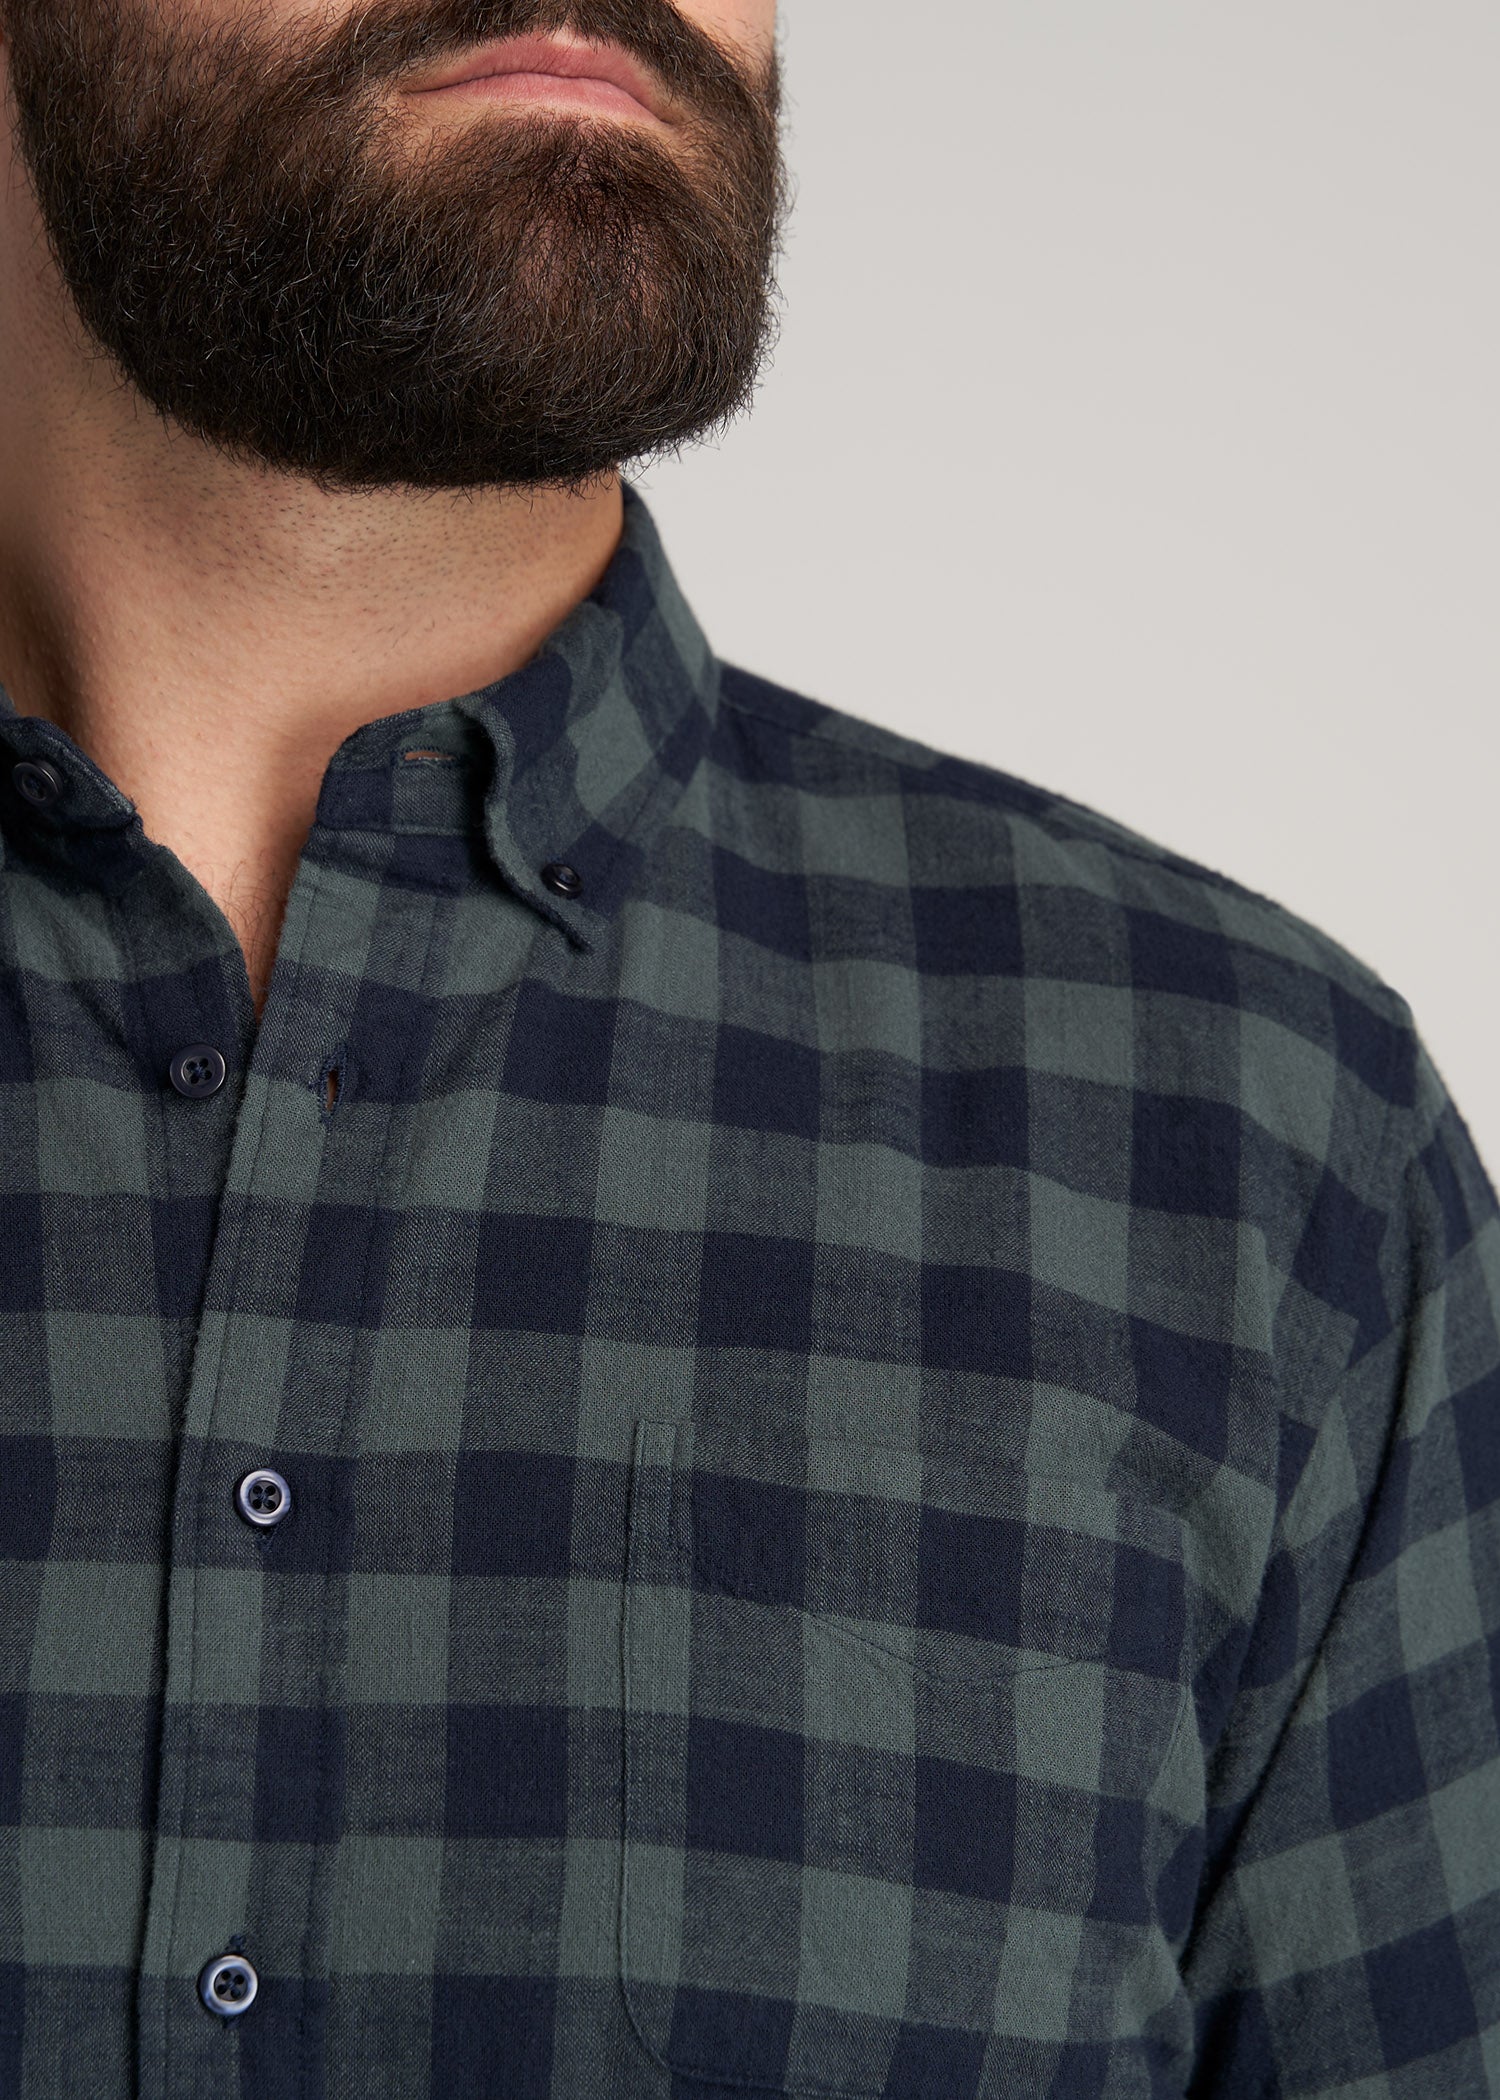       American-Tall-Men-ShortSleeve-ButtonShirt-MidnightBlueGreenPlaid-detail